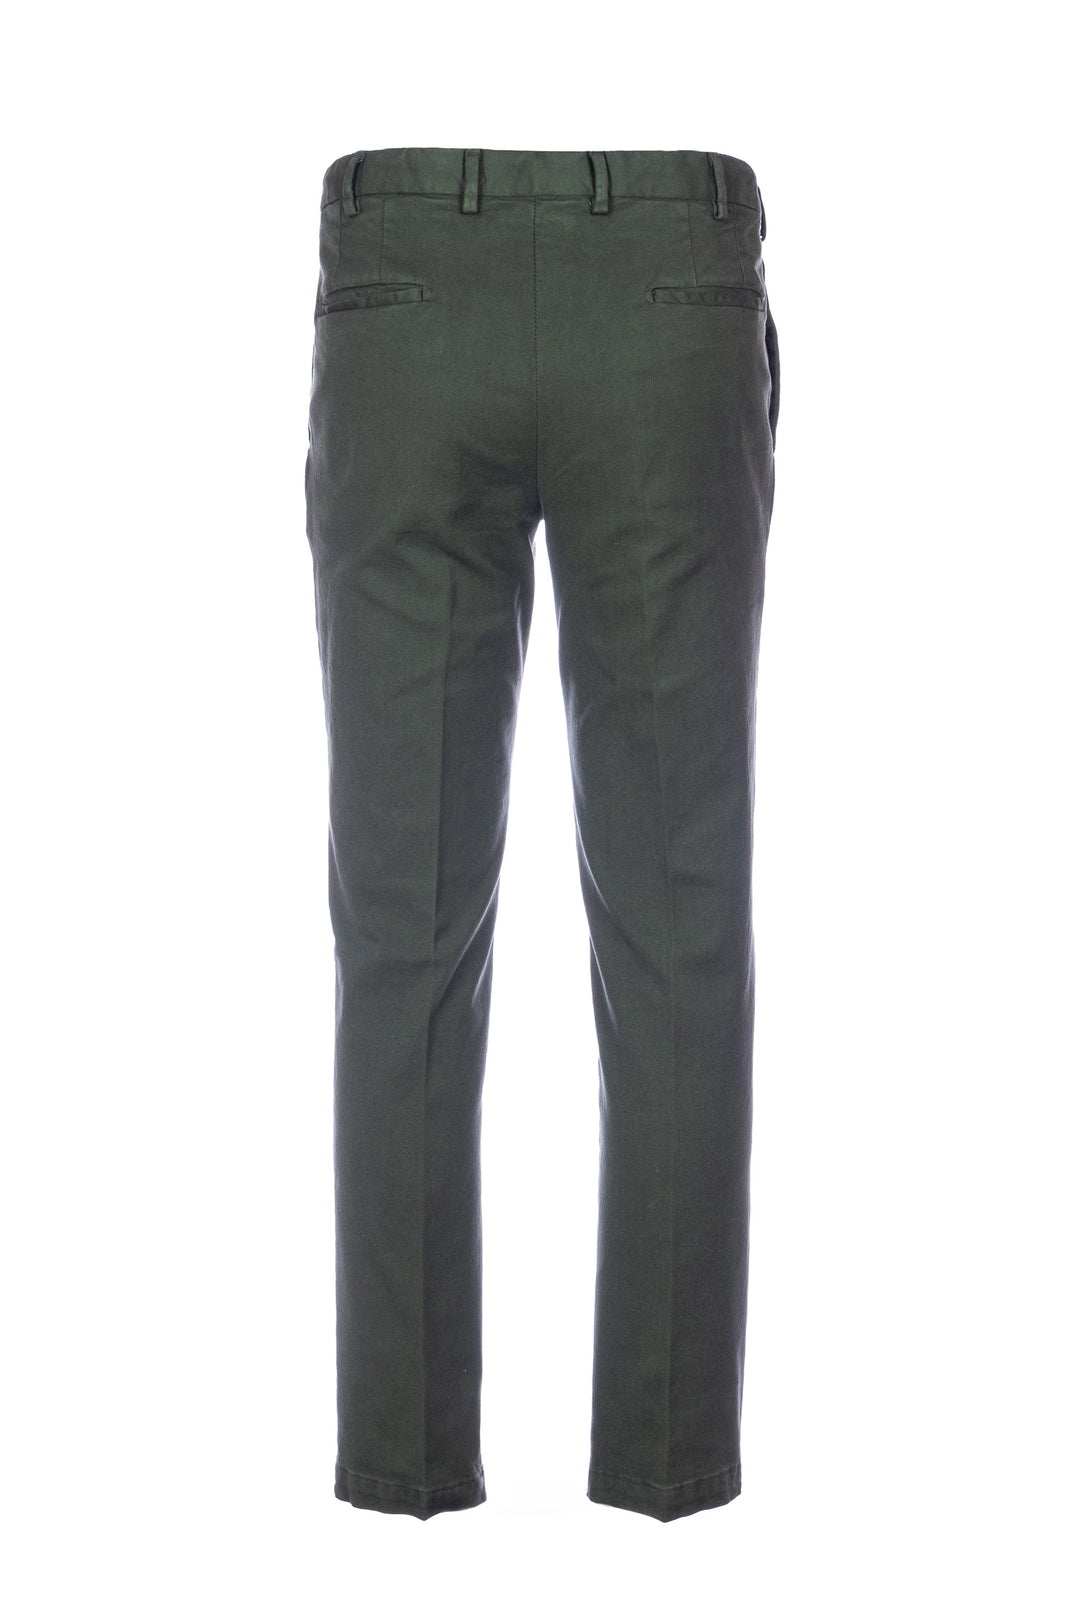 DEVORE Pantalone verde in cotone supima 3-ply con vita elastica - Mancinelli 1954